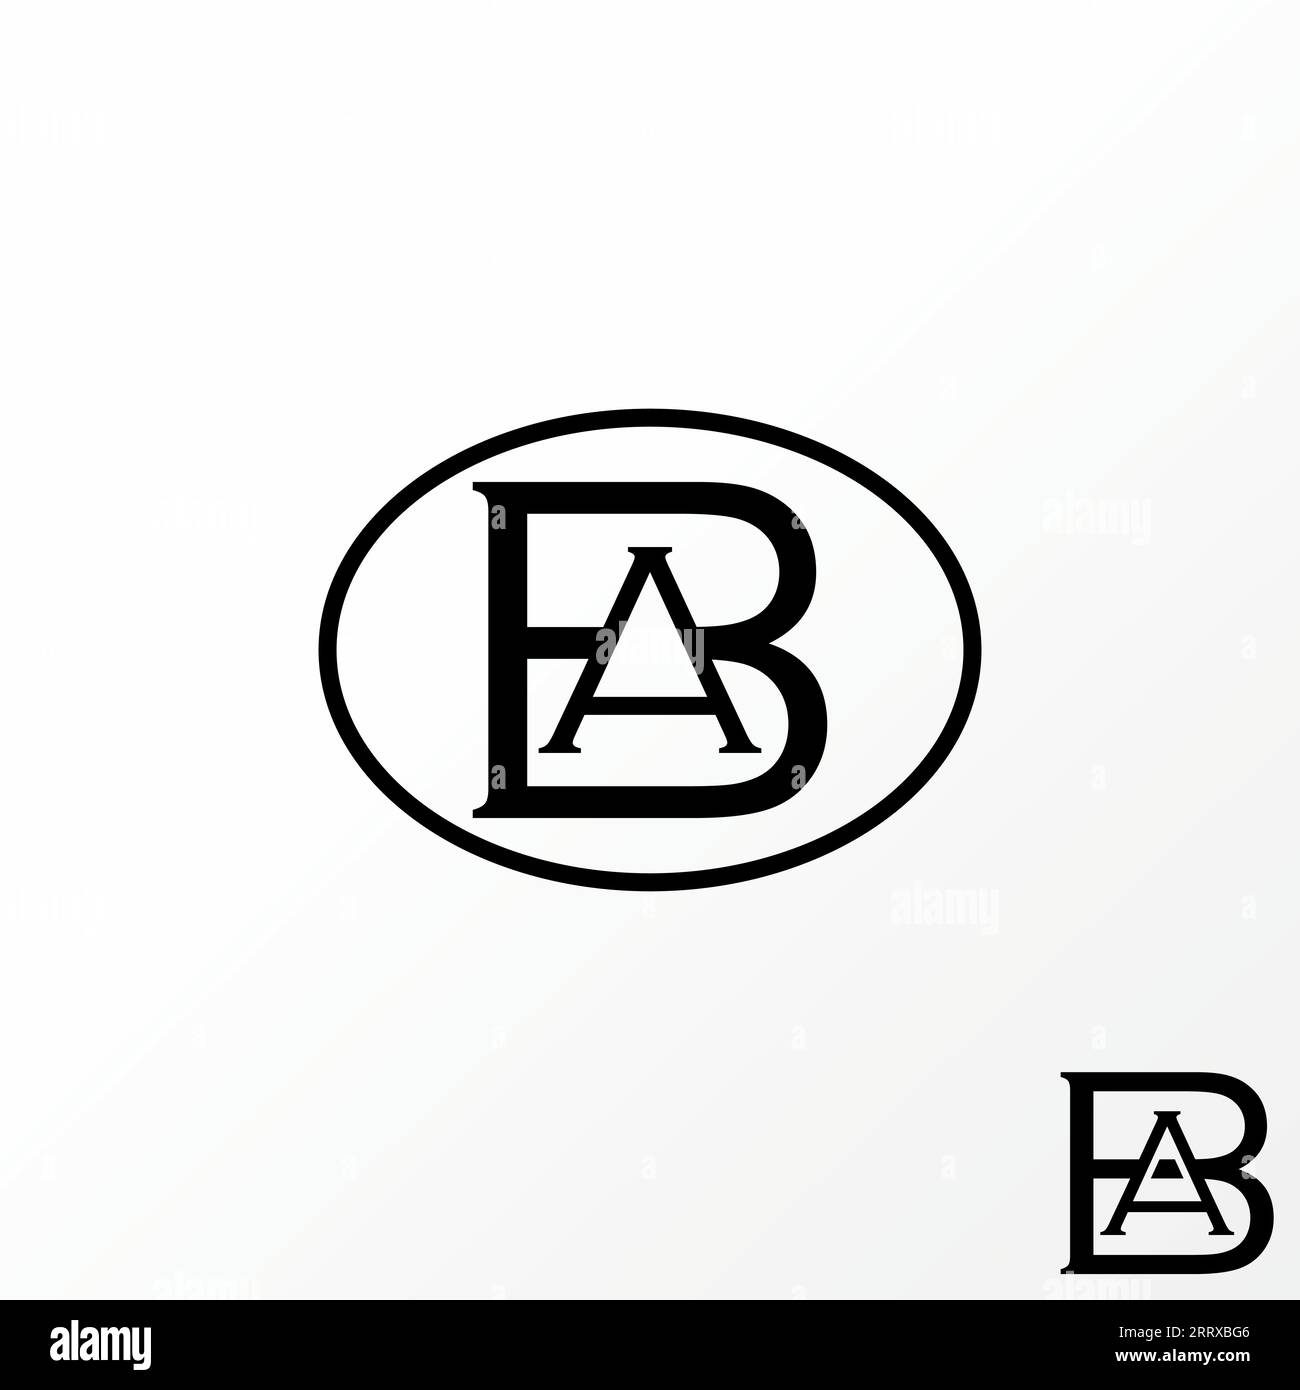 Logo-Design Grafikkonzept kreative abstrakte Premium-Vektor-Vorzeichenbuchstabe Initial BA oder ab Schriftart in der Mitte verbunden. Verwandte Monogramm-Typographie Stock Vektor